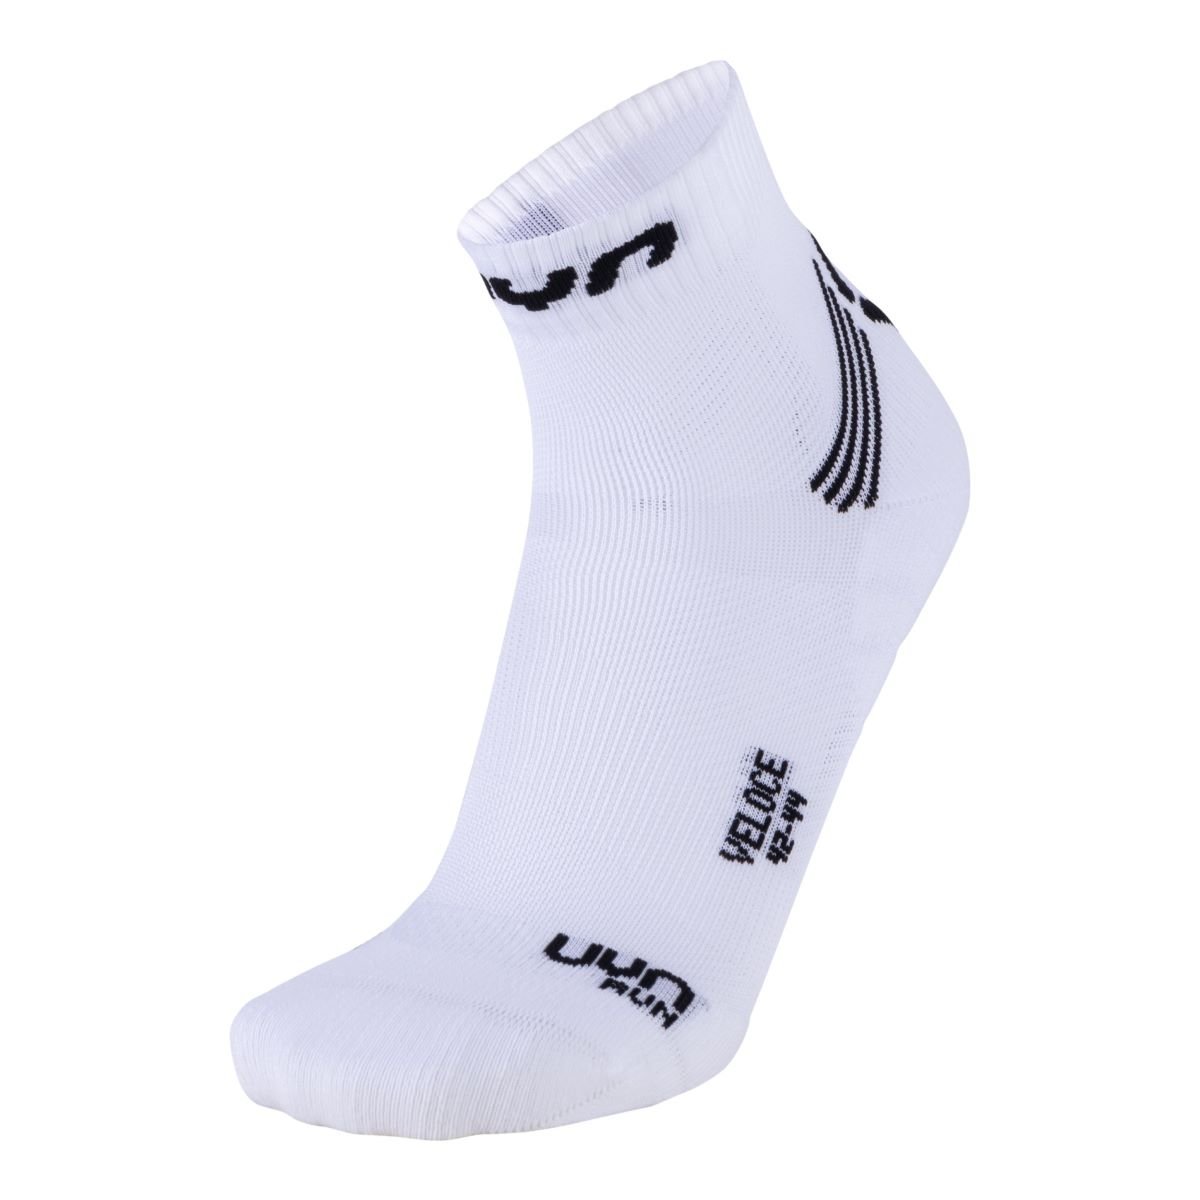 uyn-run-veloce-socks-white-black-2-1306804